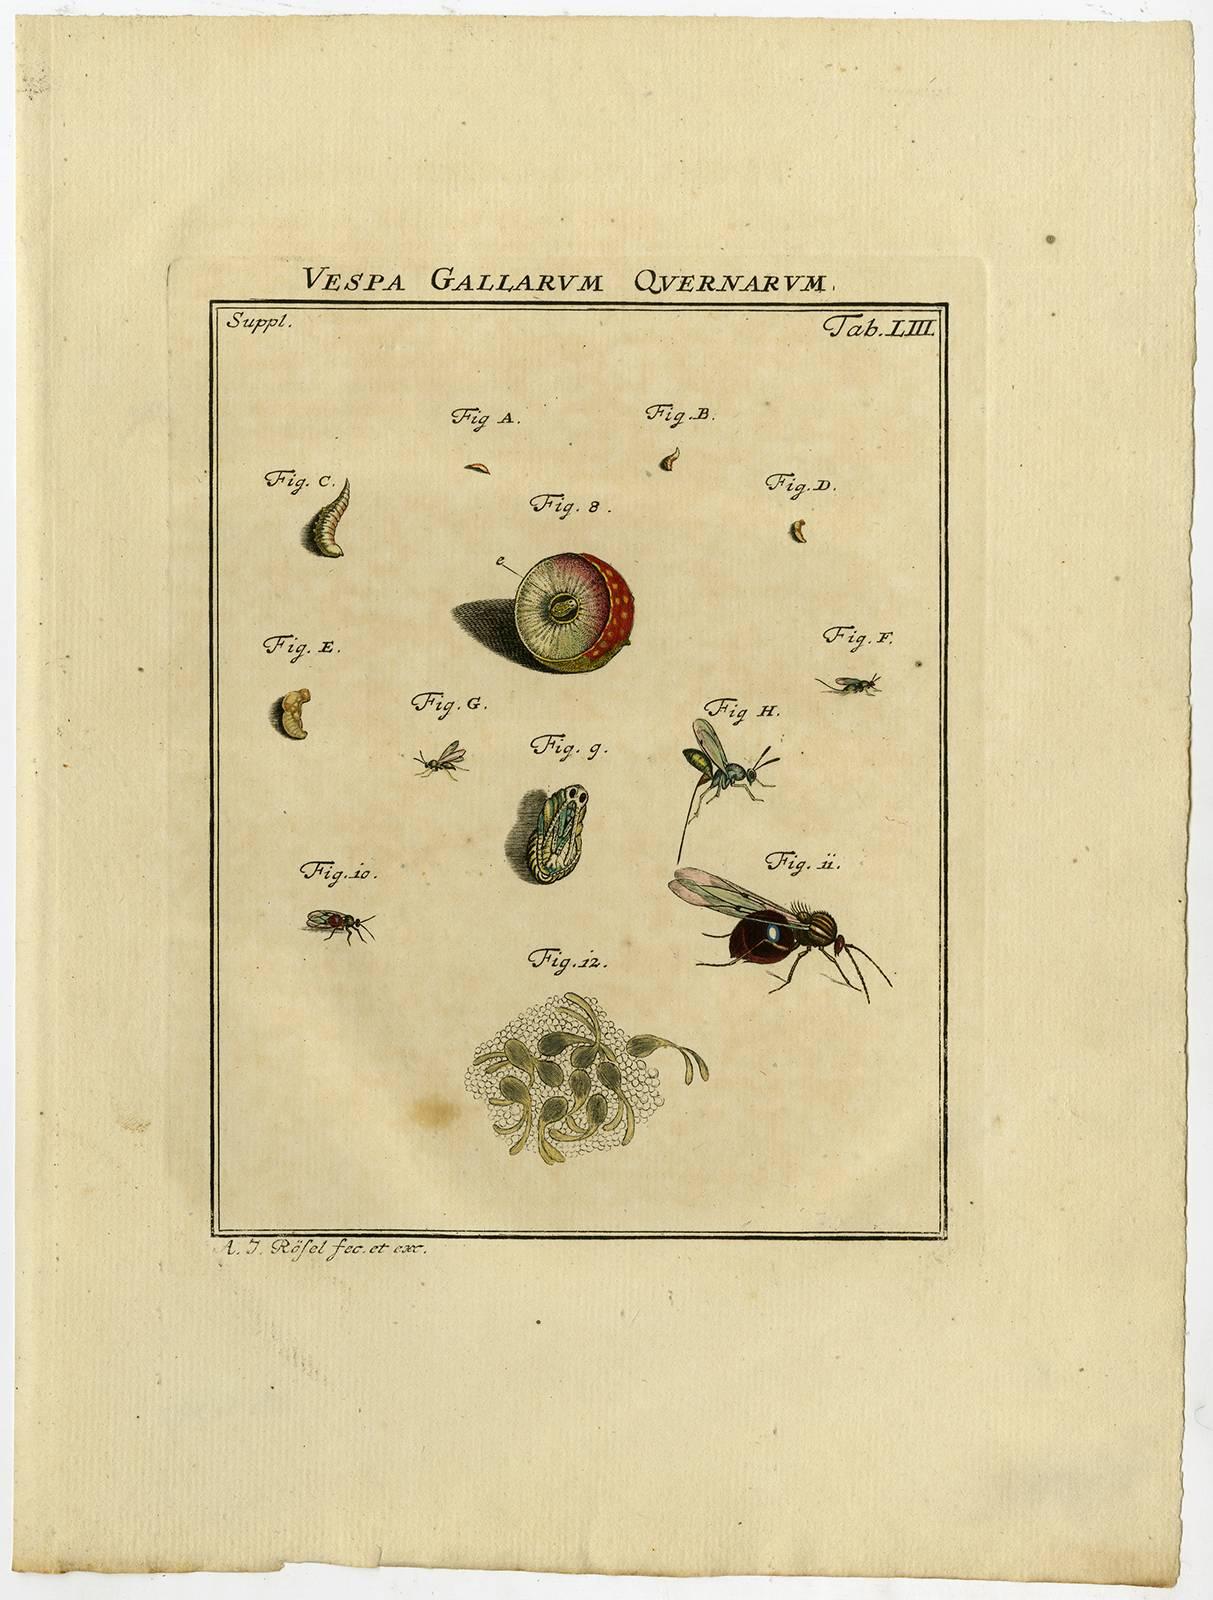 Vespa Gallarum Quernarum. Tab. LII-LIII. - Print by August Johann Rösel von Rosenhof